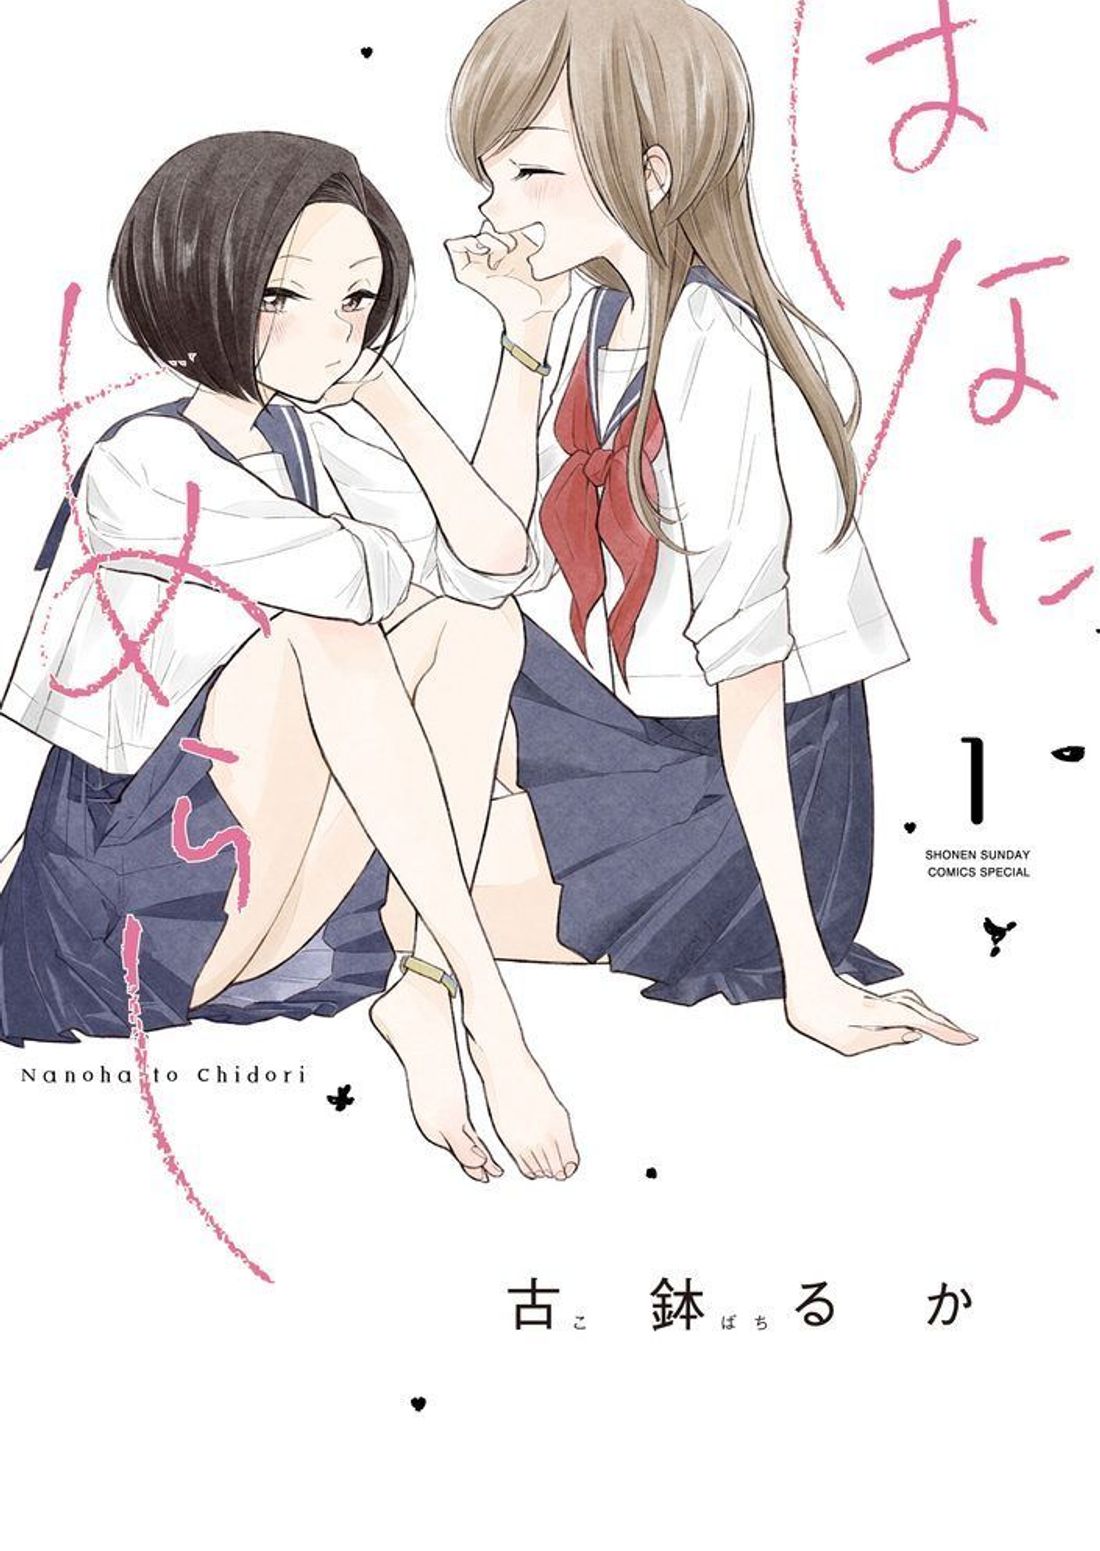 百合向魅力不输BL！精选15部日本「GL漫画」推荐，少女们独有情欲与友情交织的世界！插图